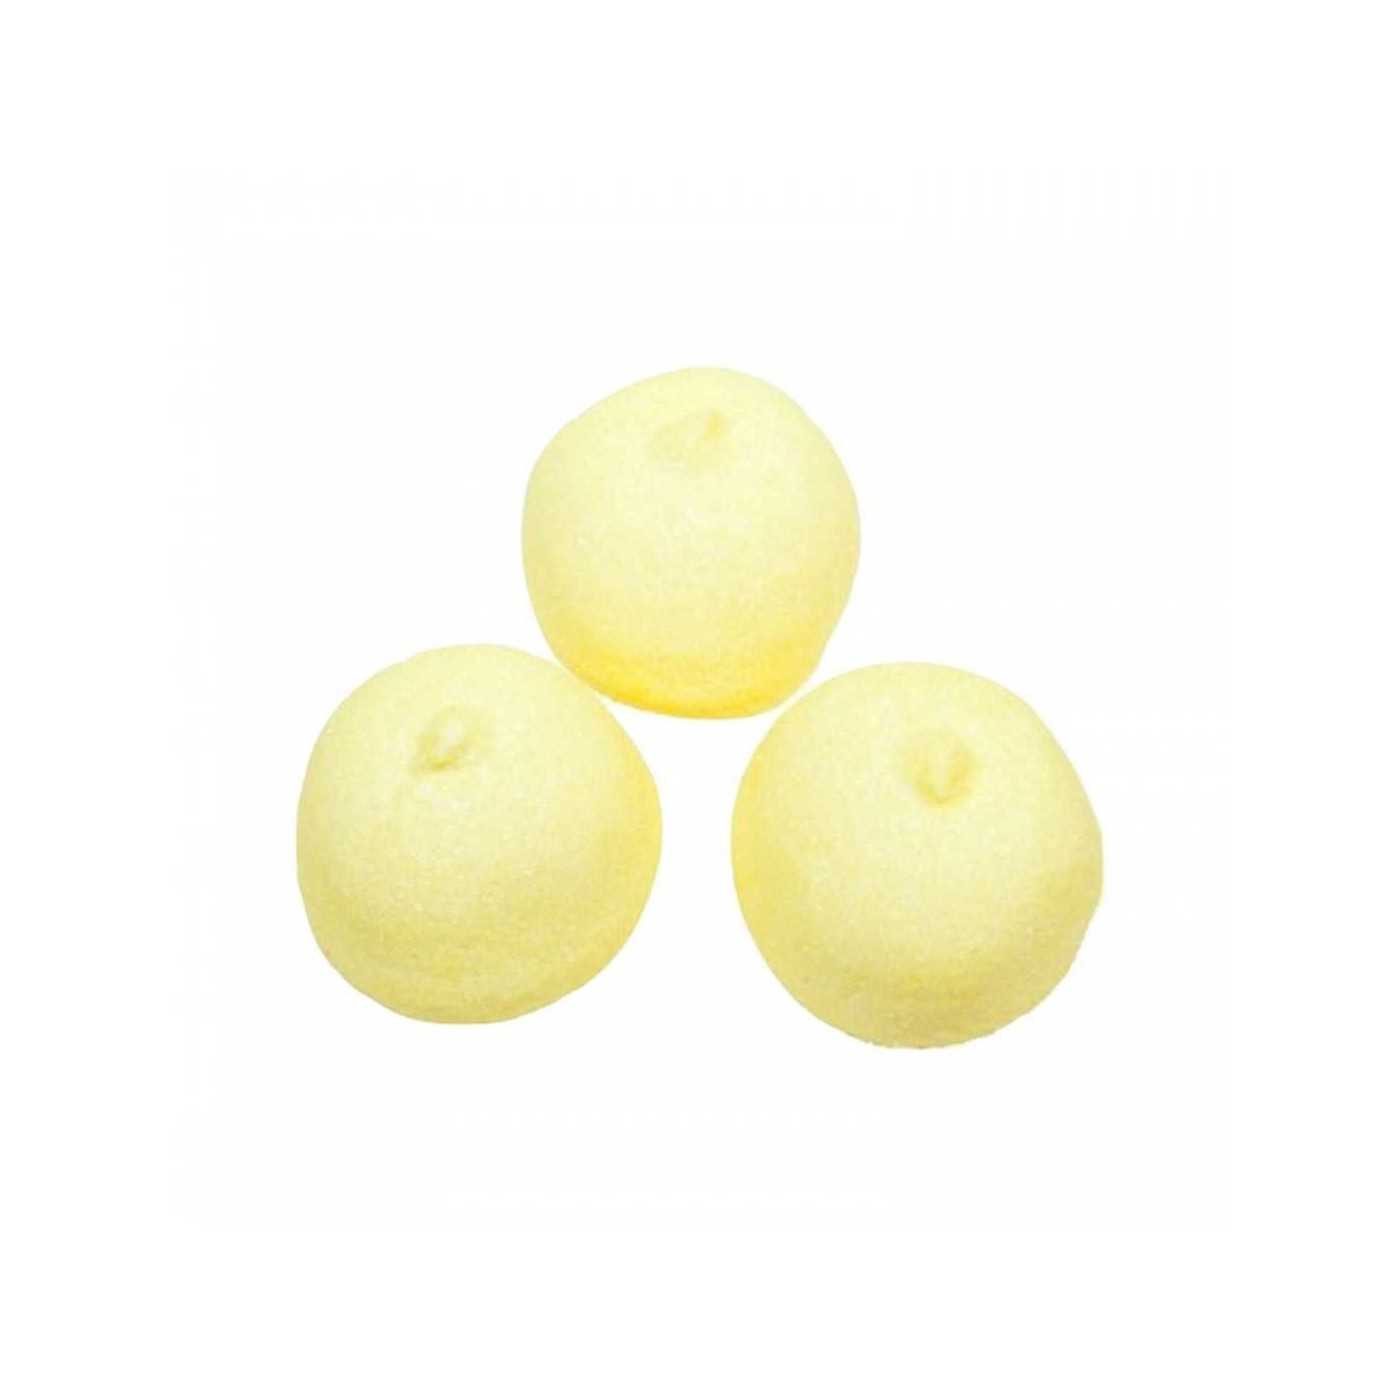 Spekbollen geel 1kg